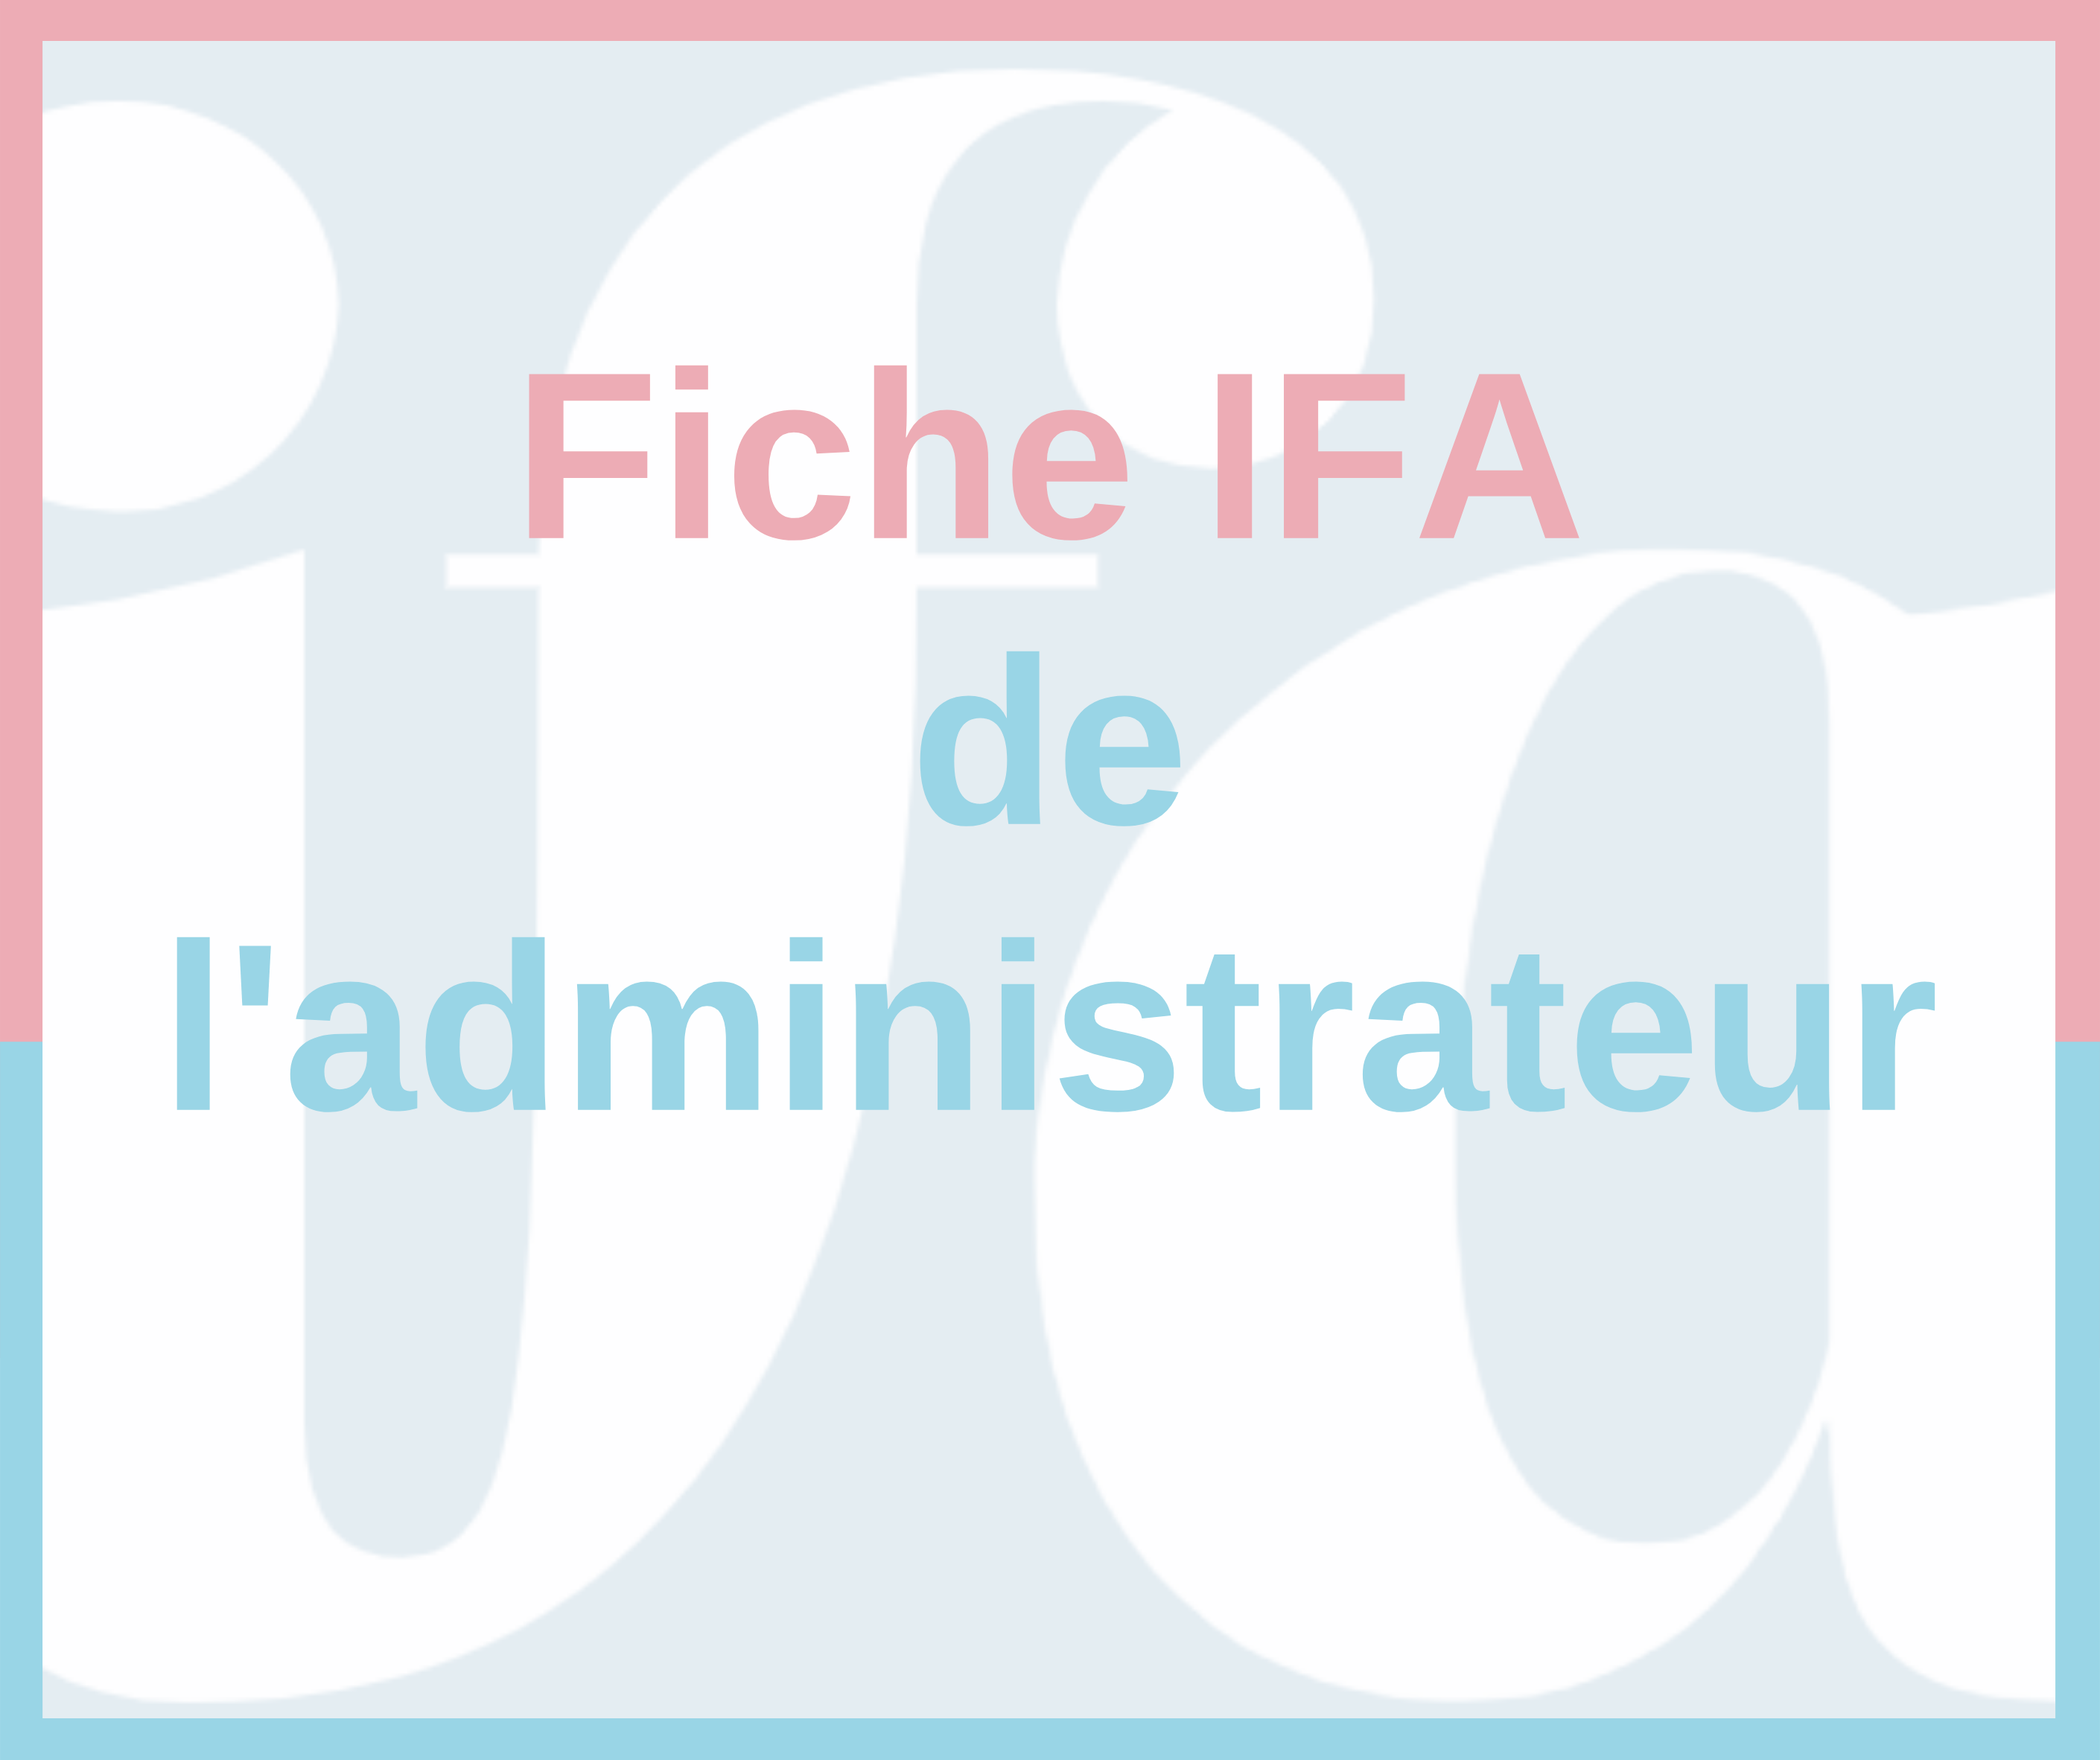 Fiche IFA de l'administrateur - Rapport AMF 2021 sur le gouvernement d’entreprise et ...